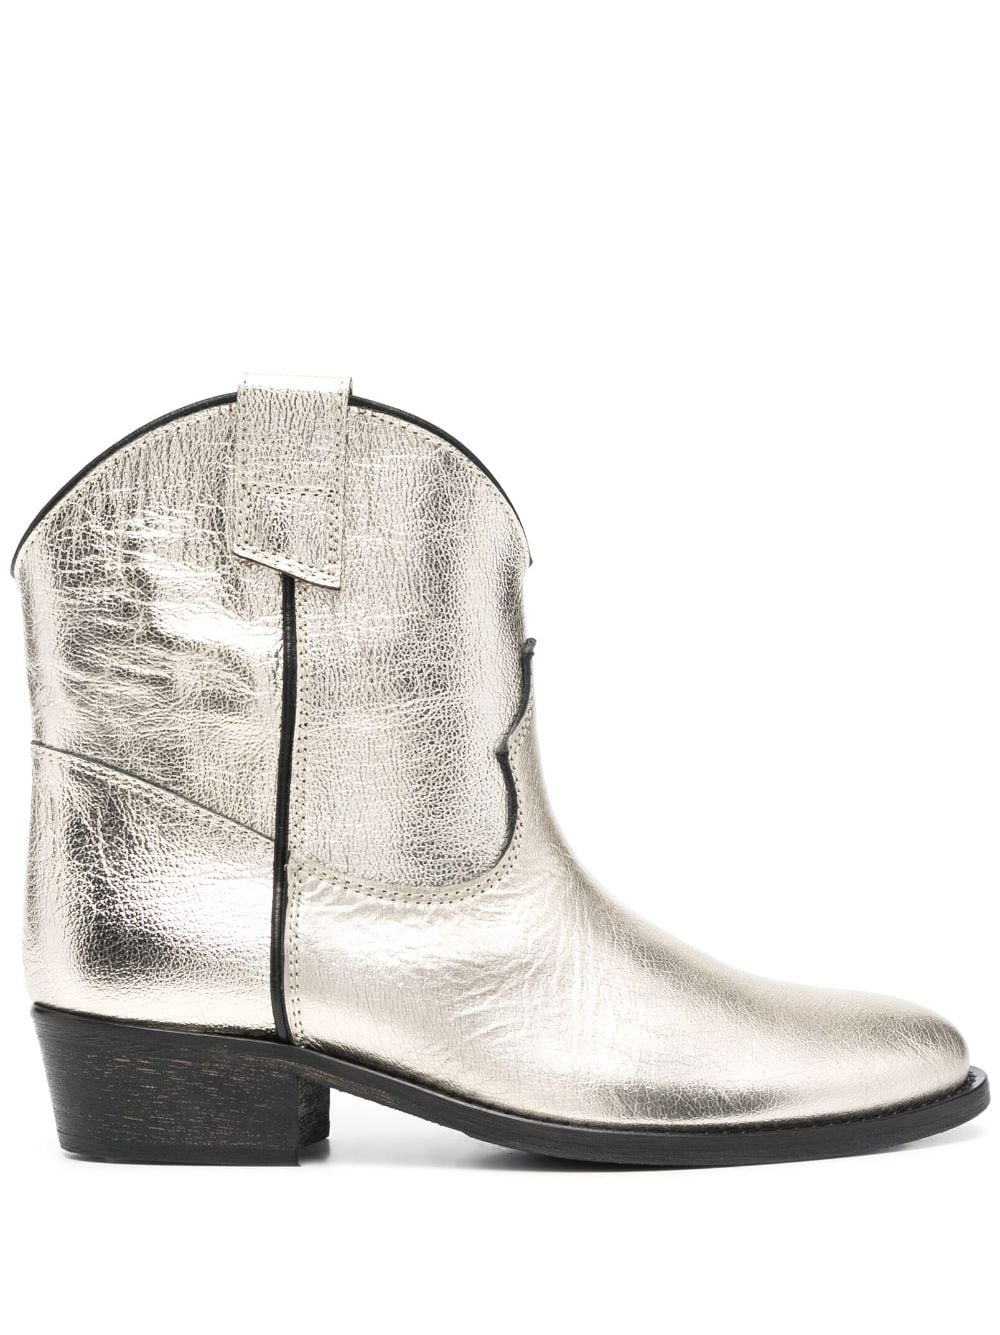 Via Roma 15 Texan leather boots - Gold von Via Roma 15